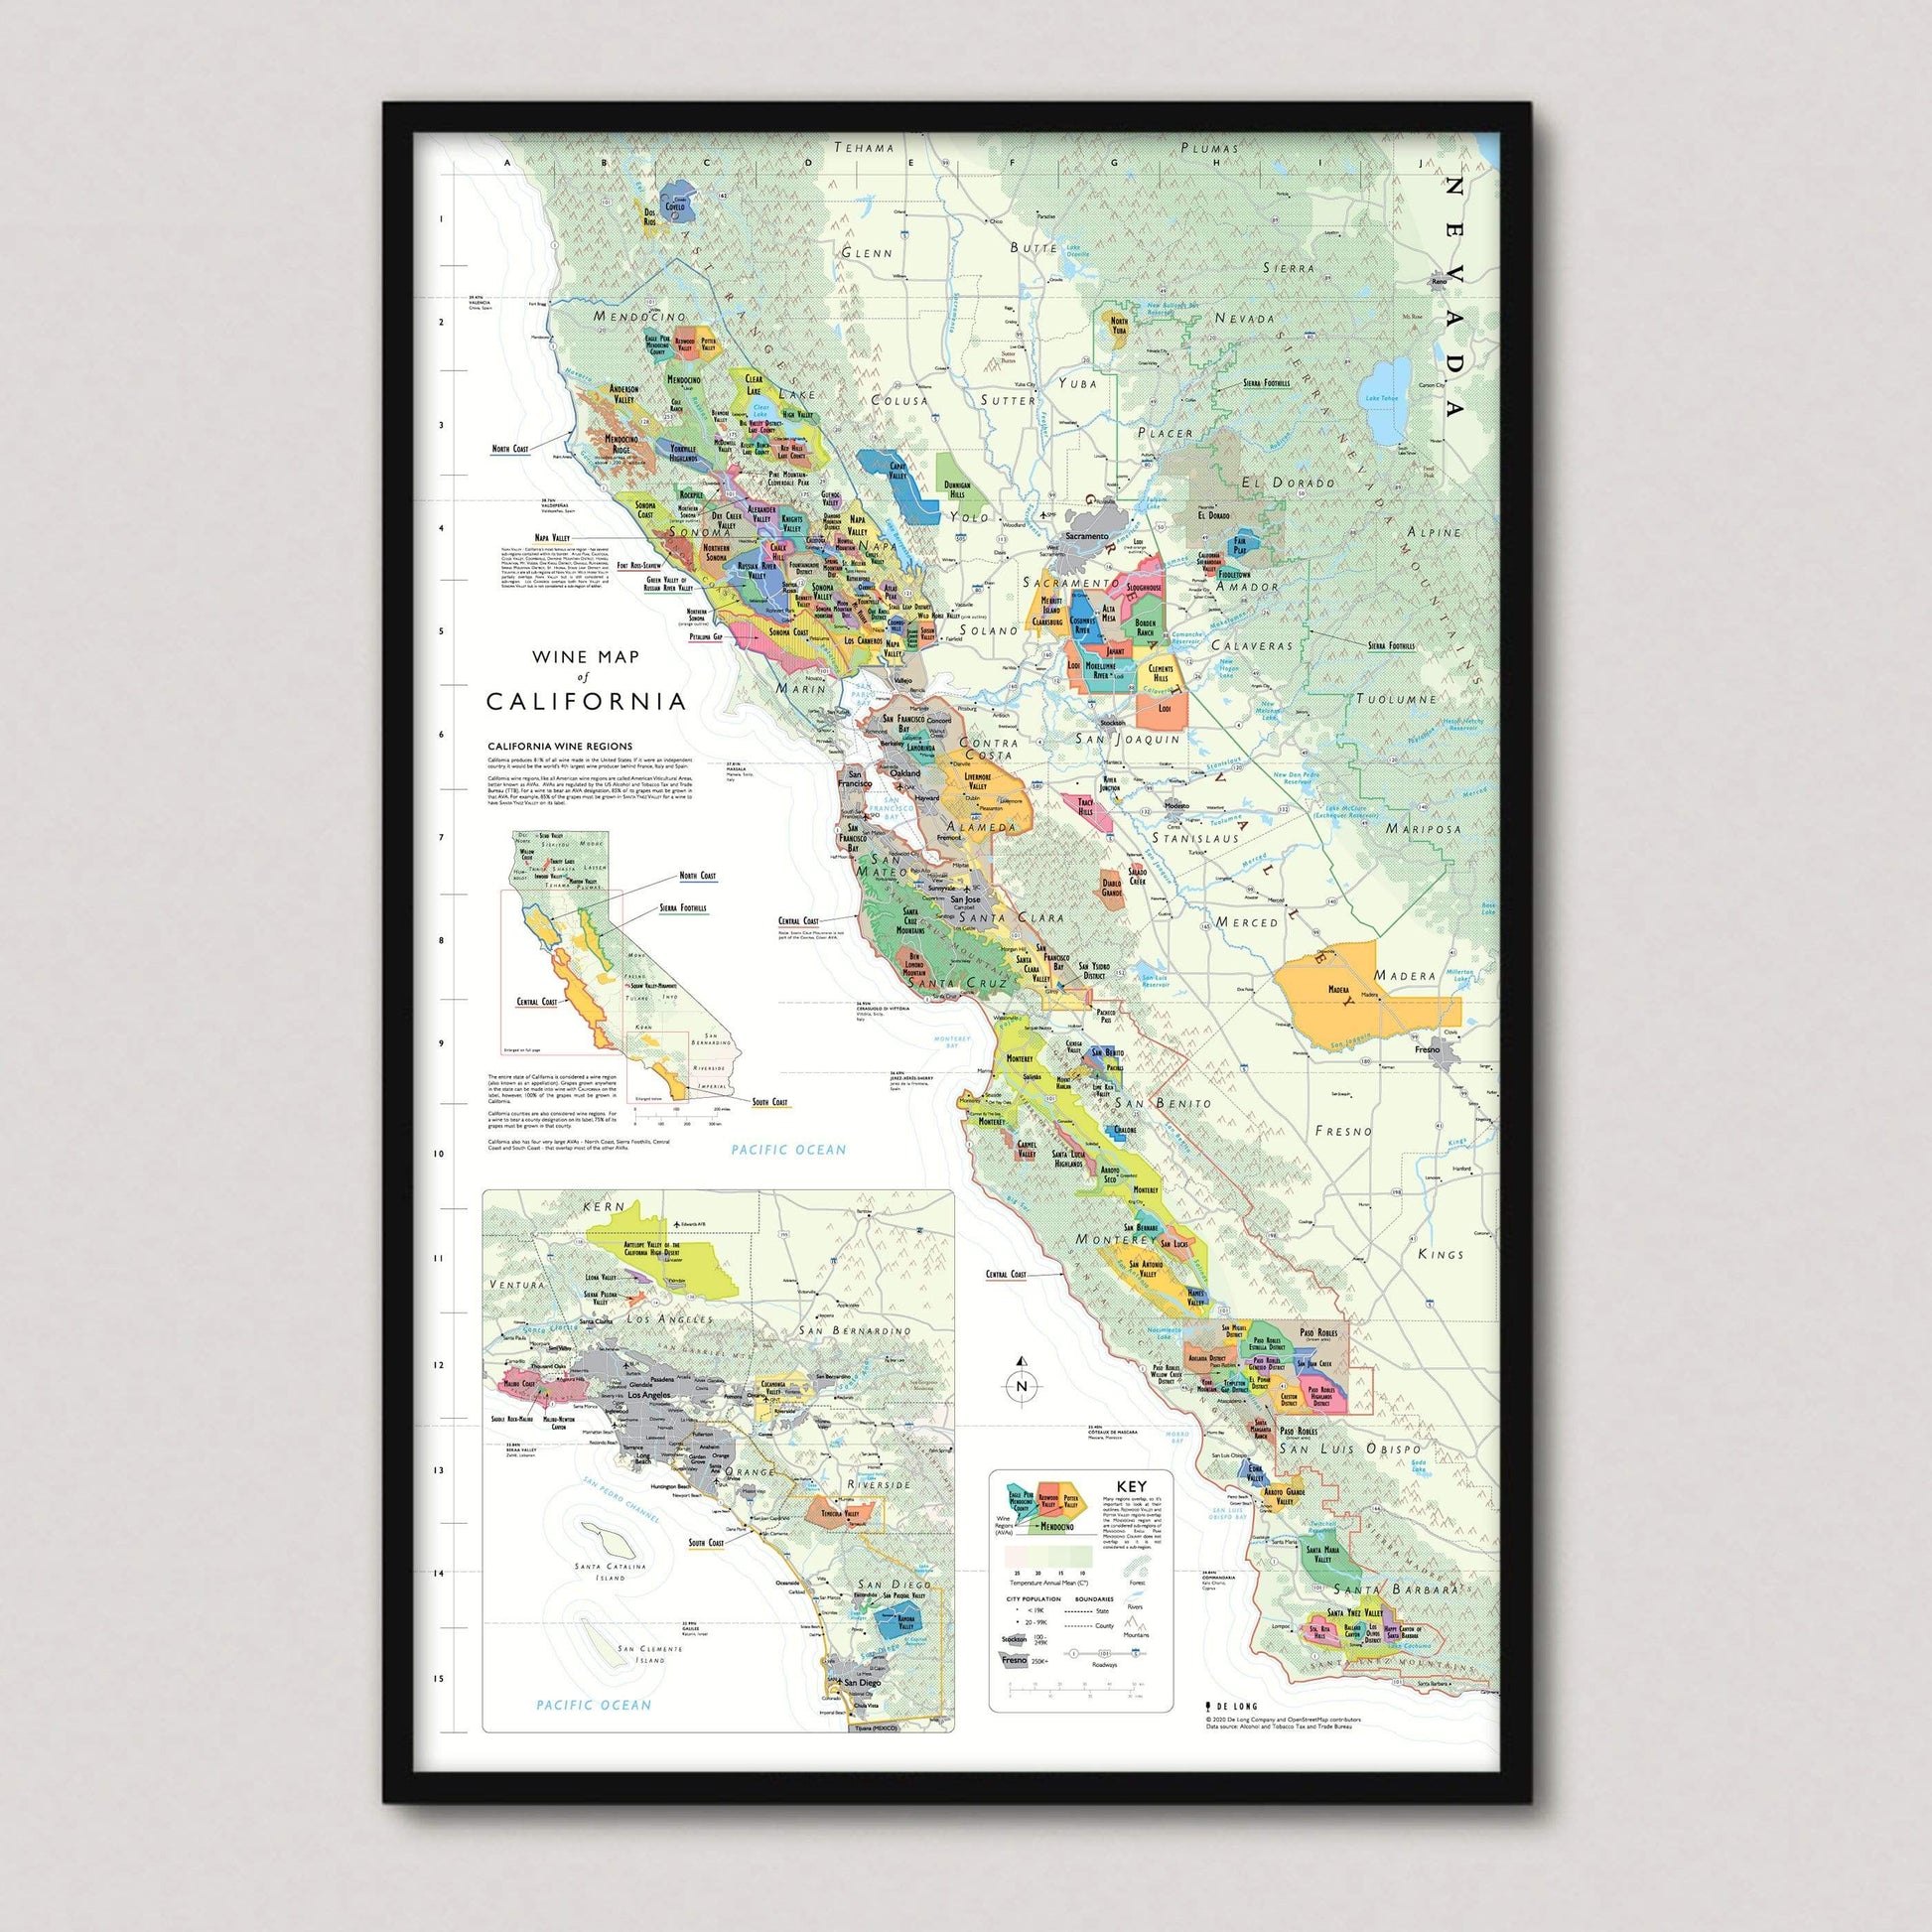 Wine Map of California framed